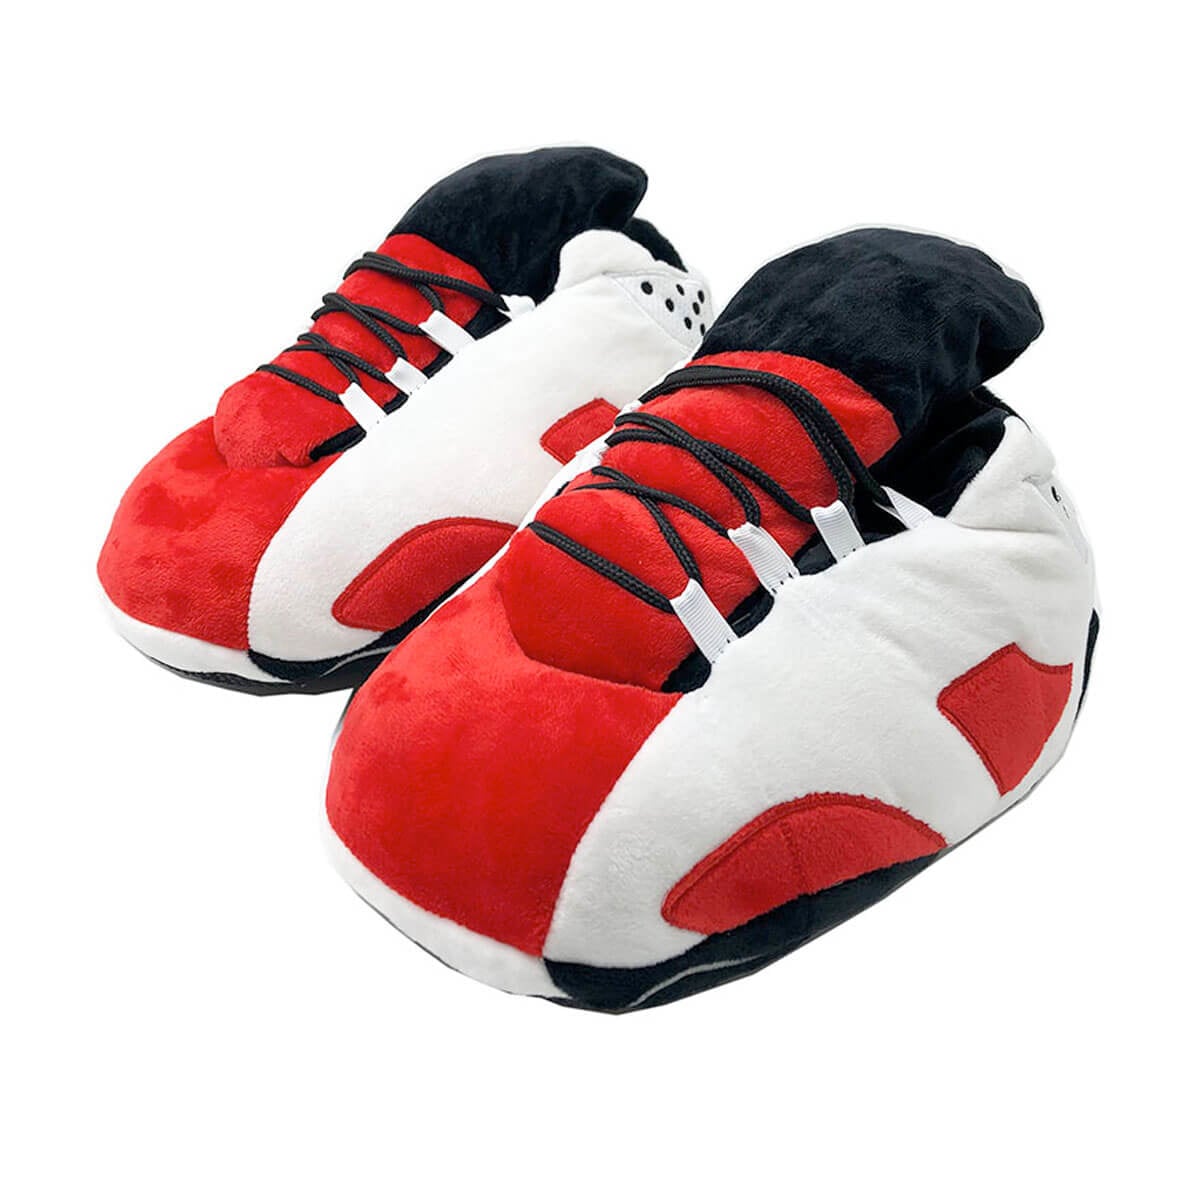 Slippers Plush Sneakers Shoes Boost Sneaker Jordan Men Women One Size Fits  Most | eBay